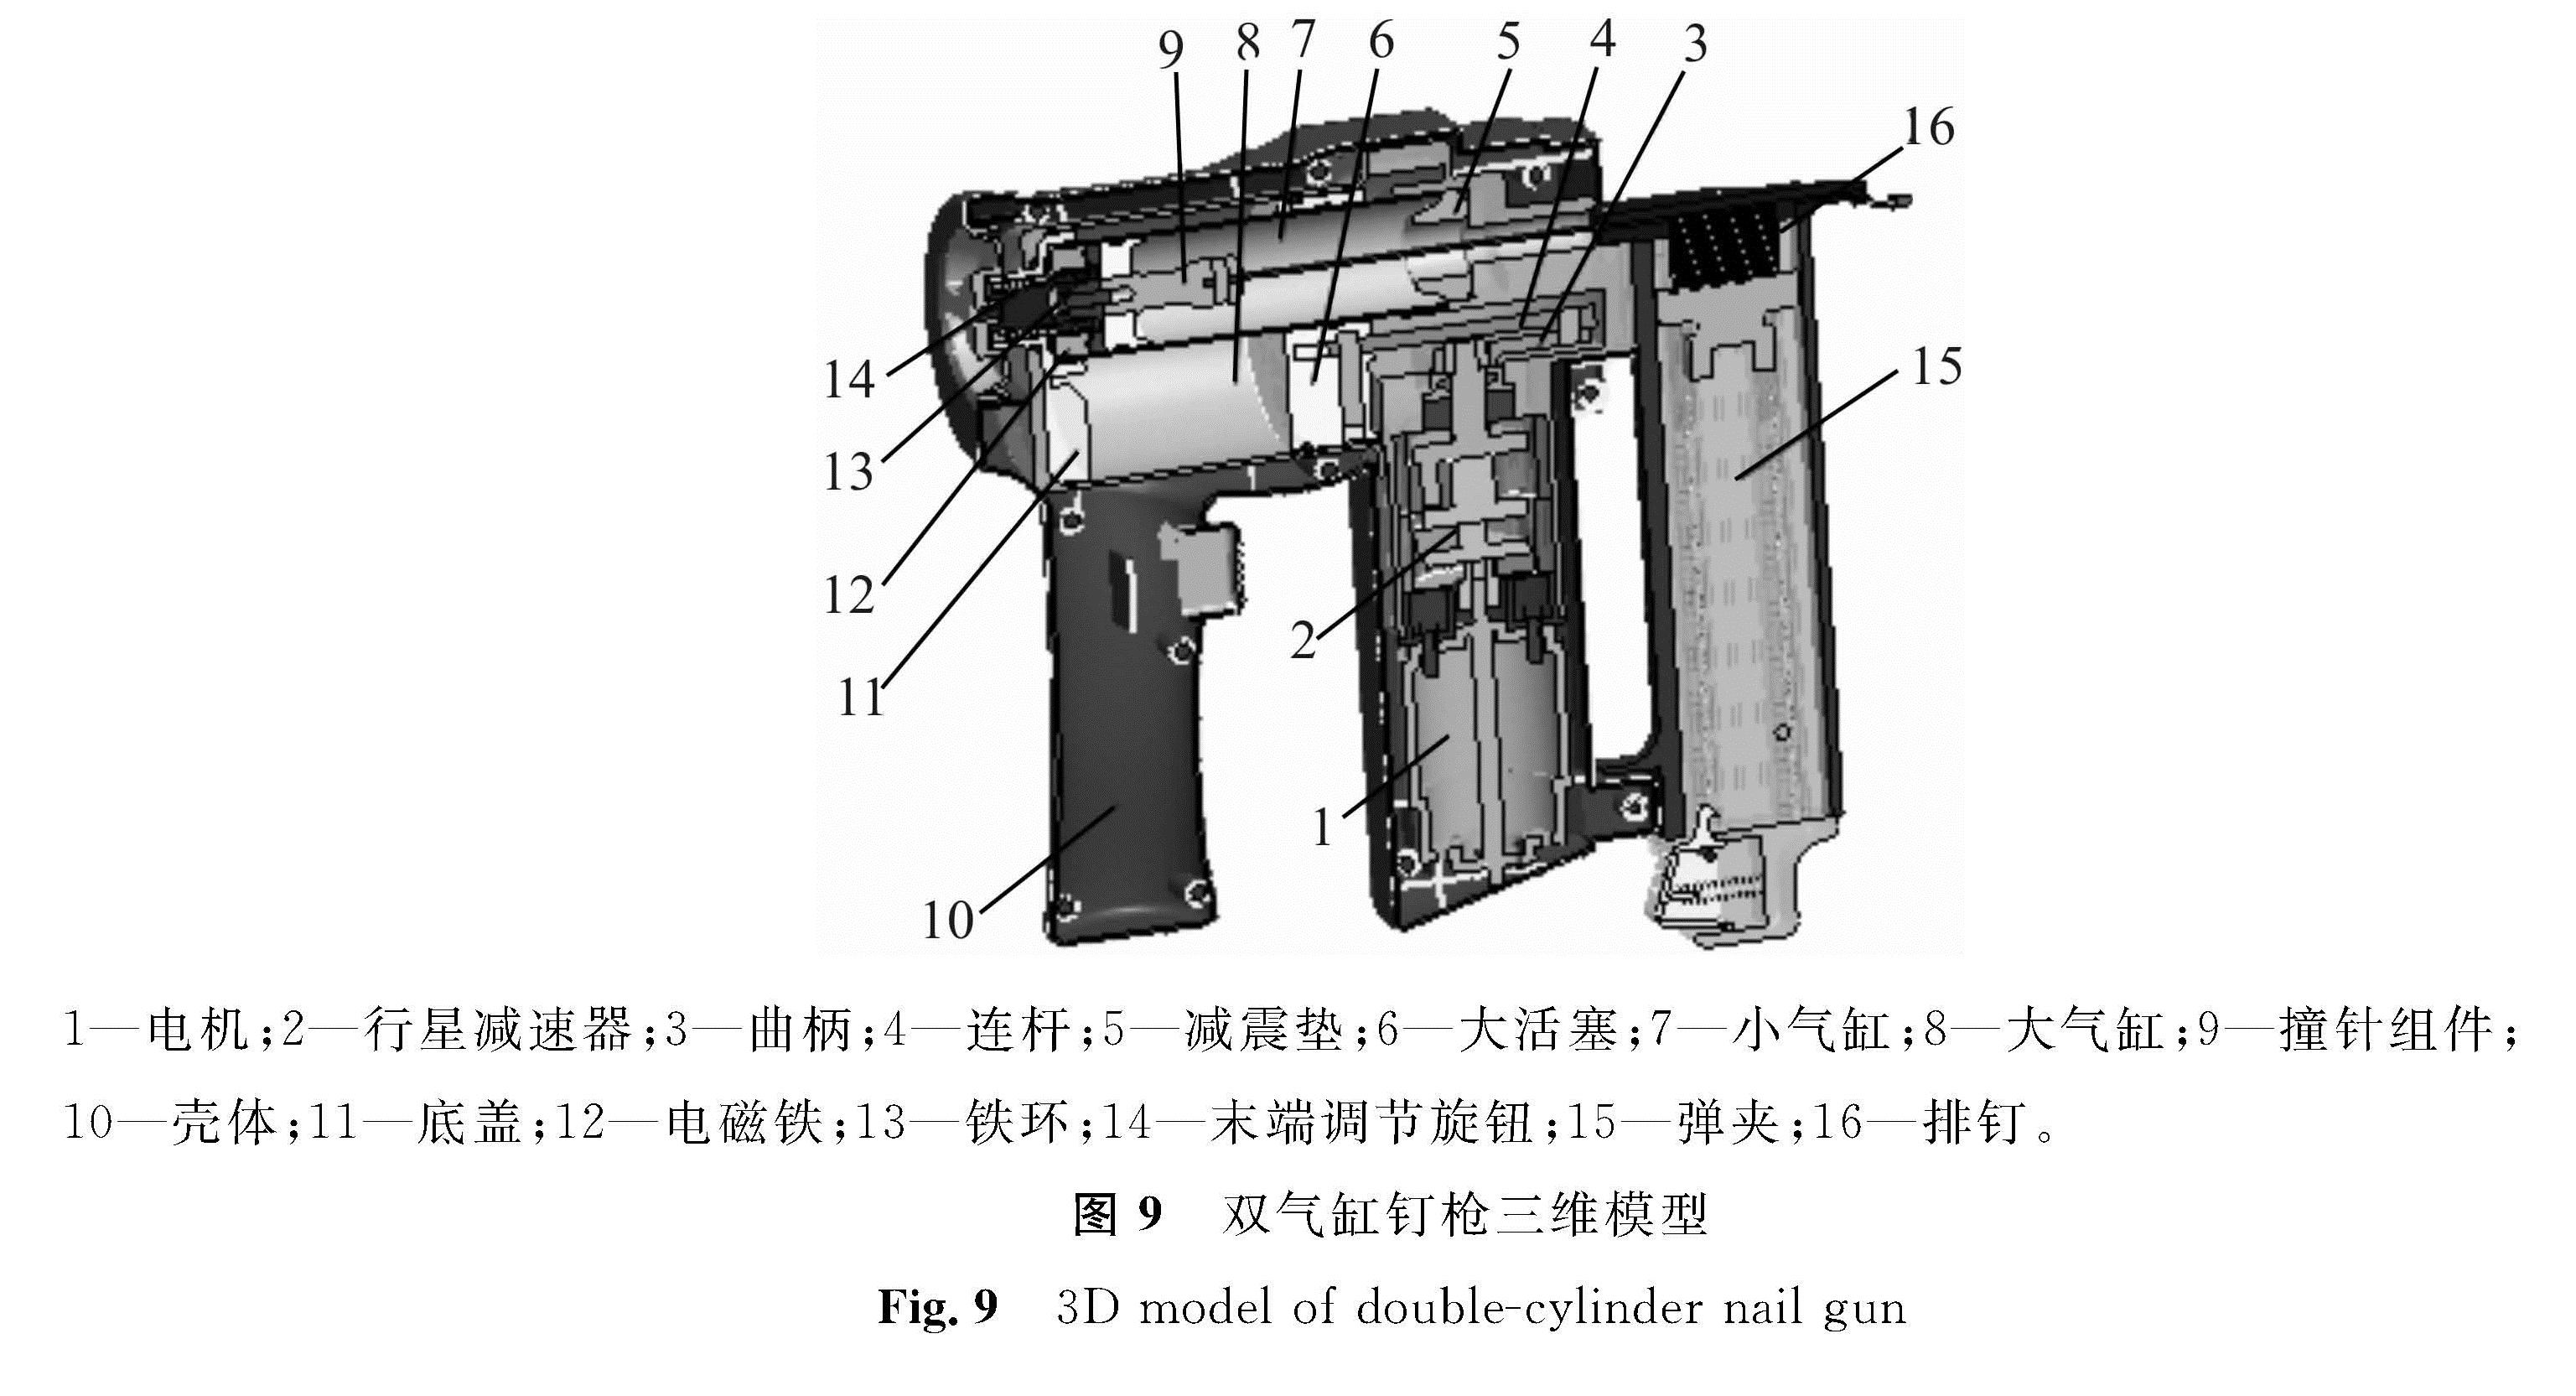 图9 双气缸钉枪三维模型<br/>Fig.9 3D model of double-cylinder nail gun